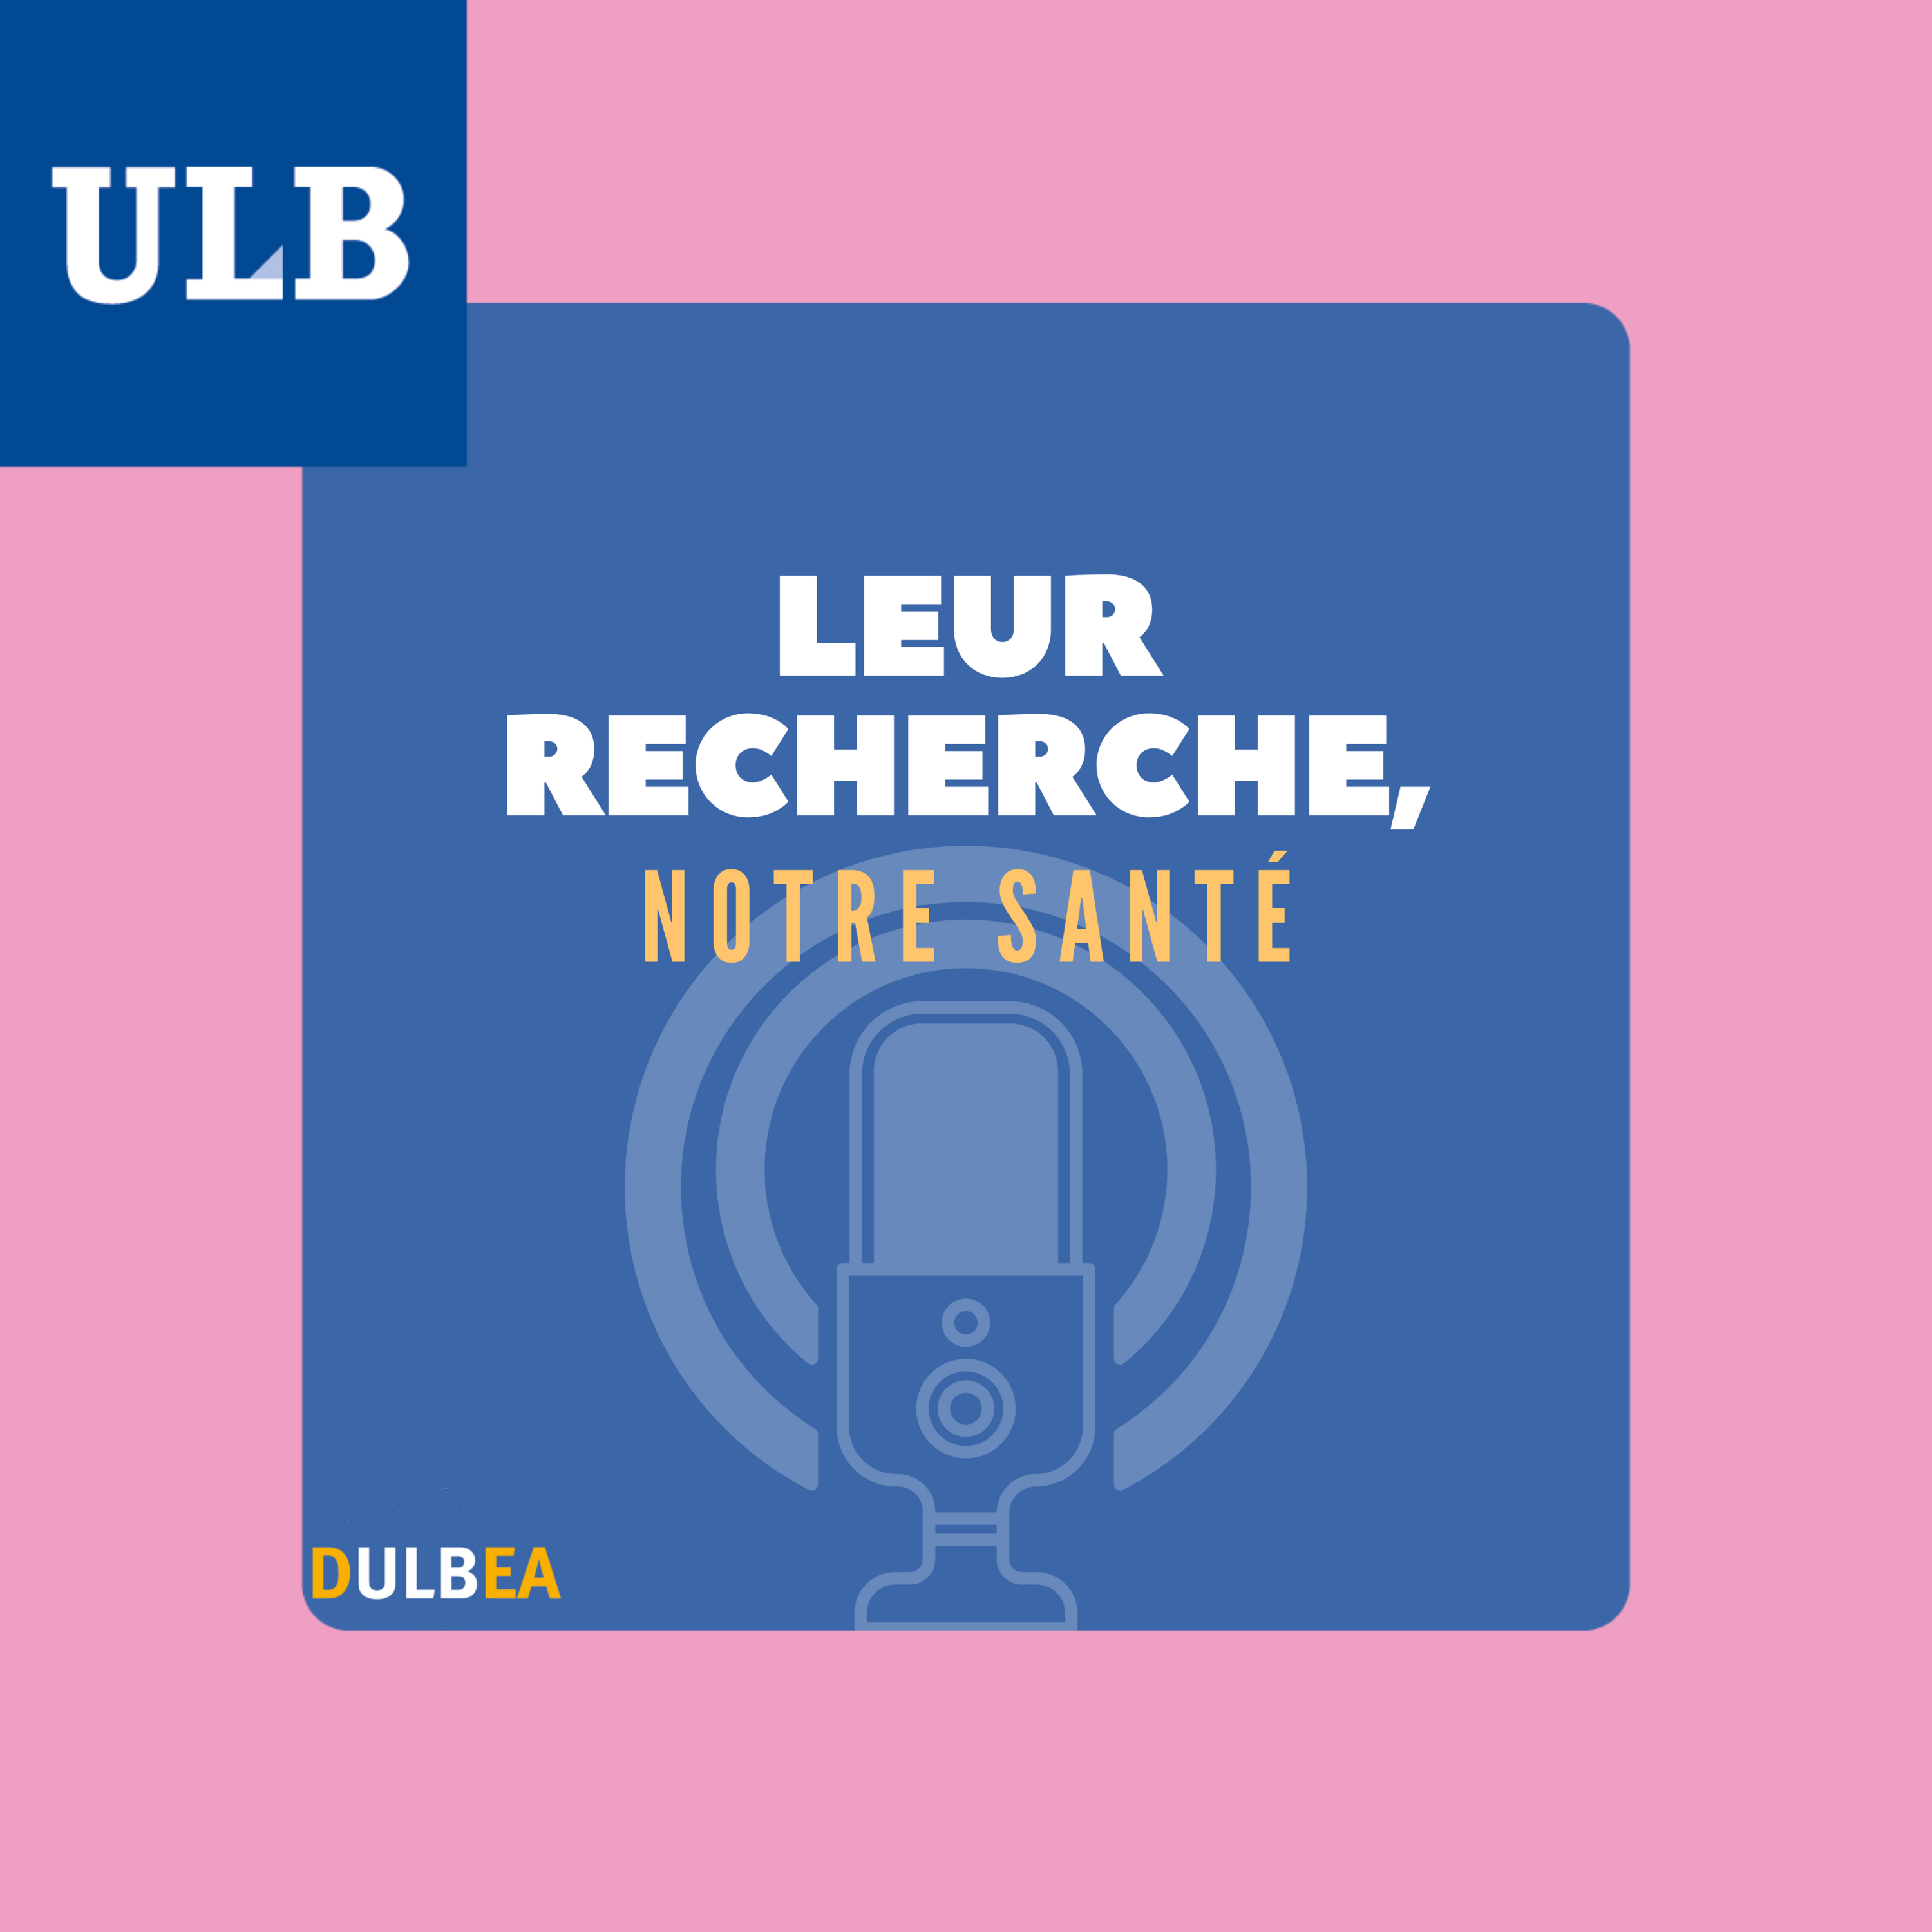 ULB Podcasts - Leur recherche, notre santé